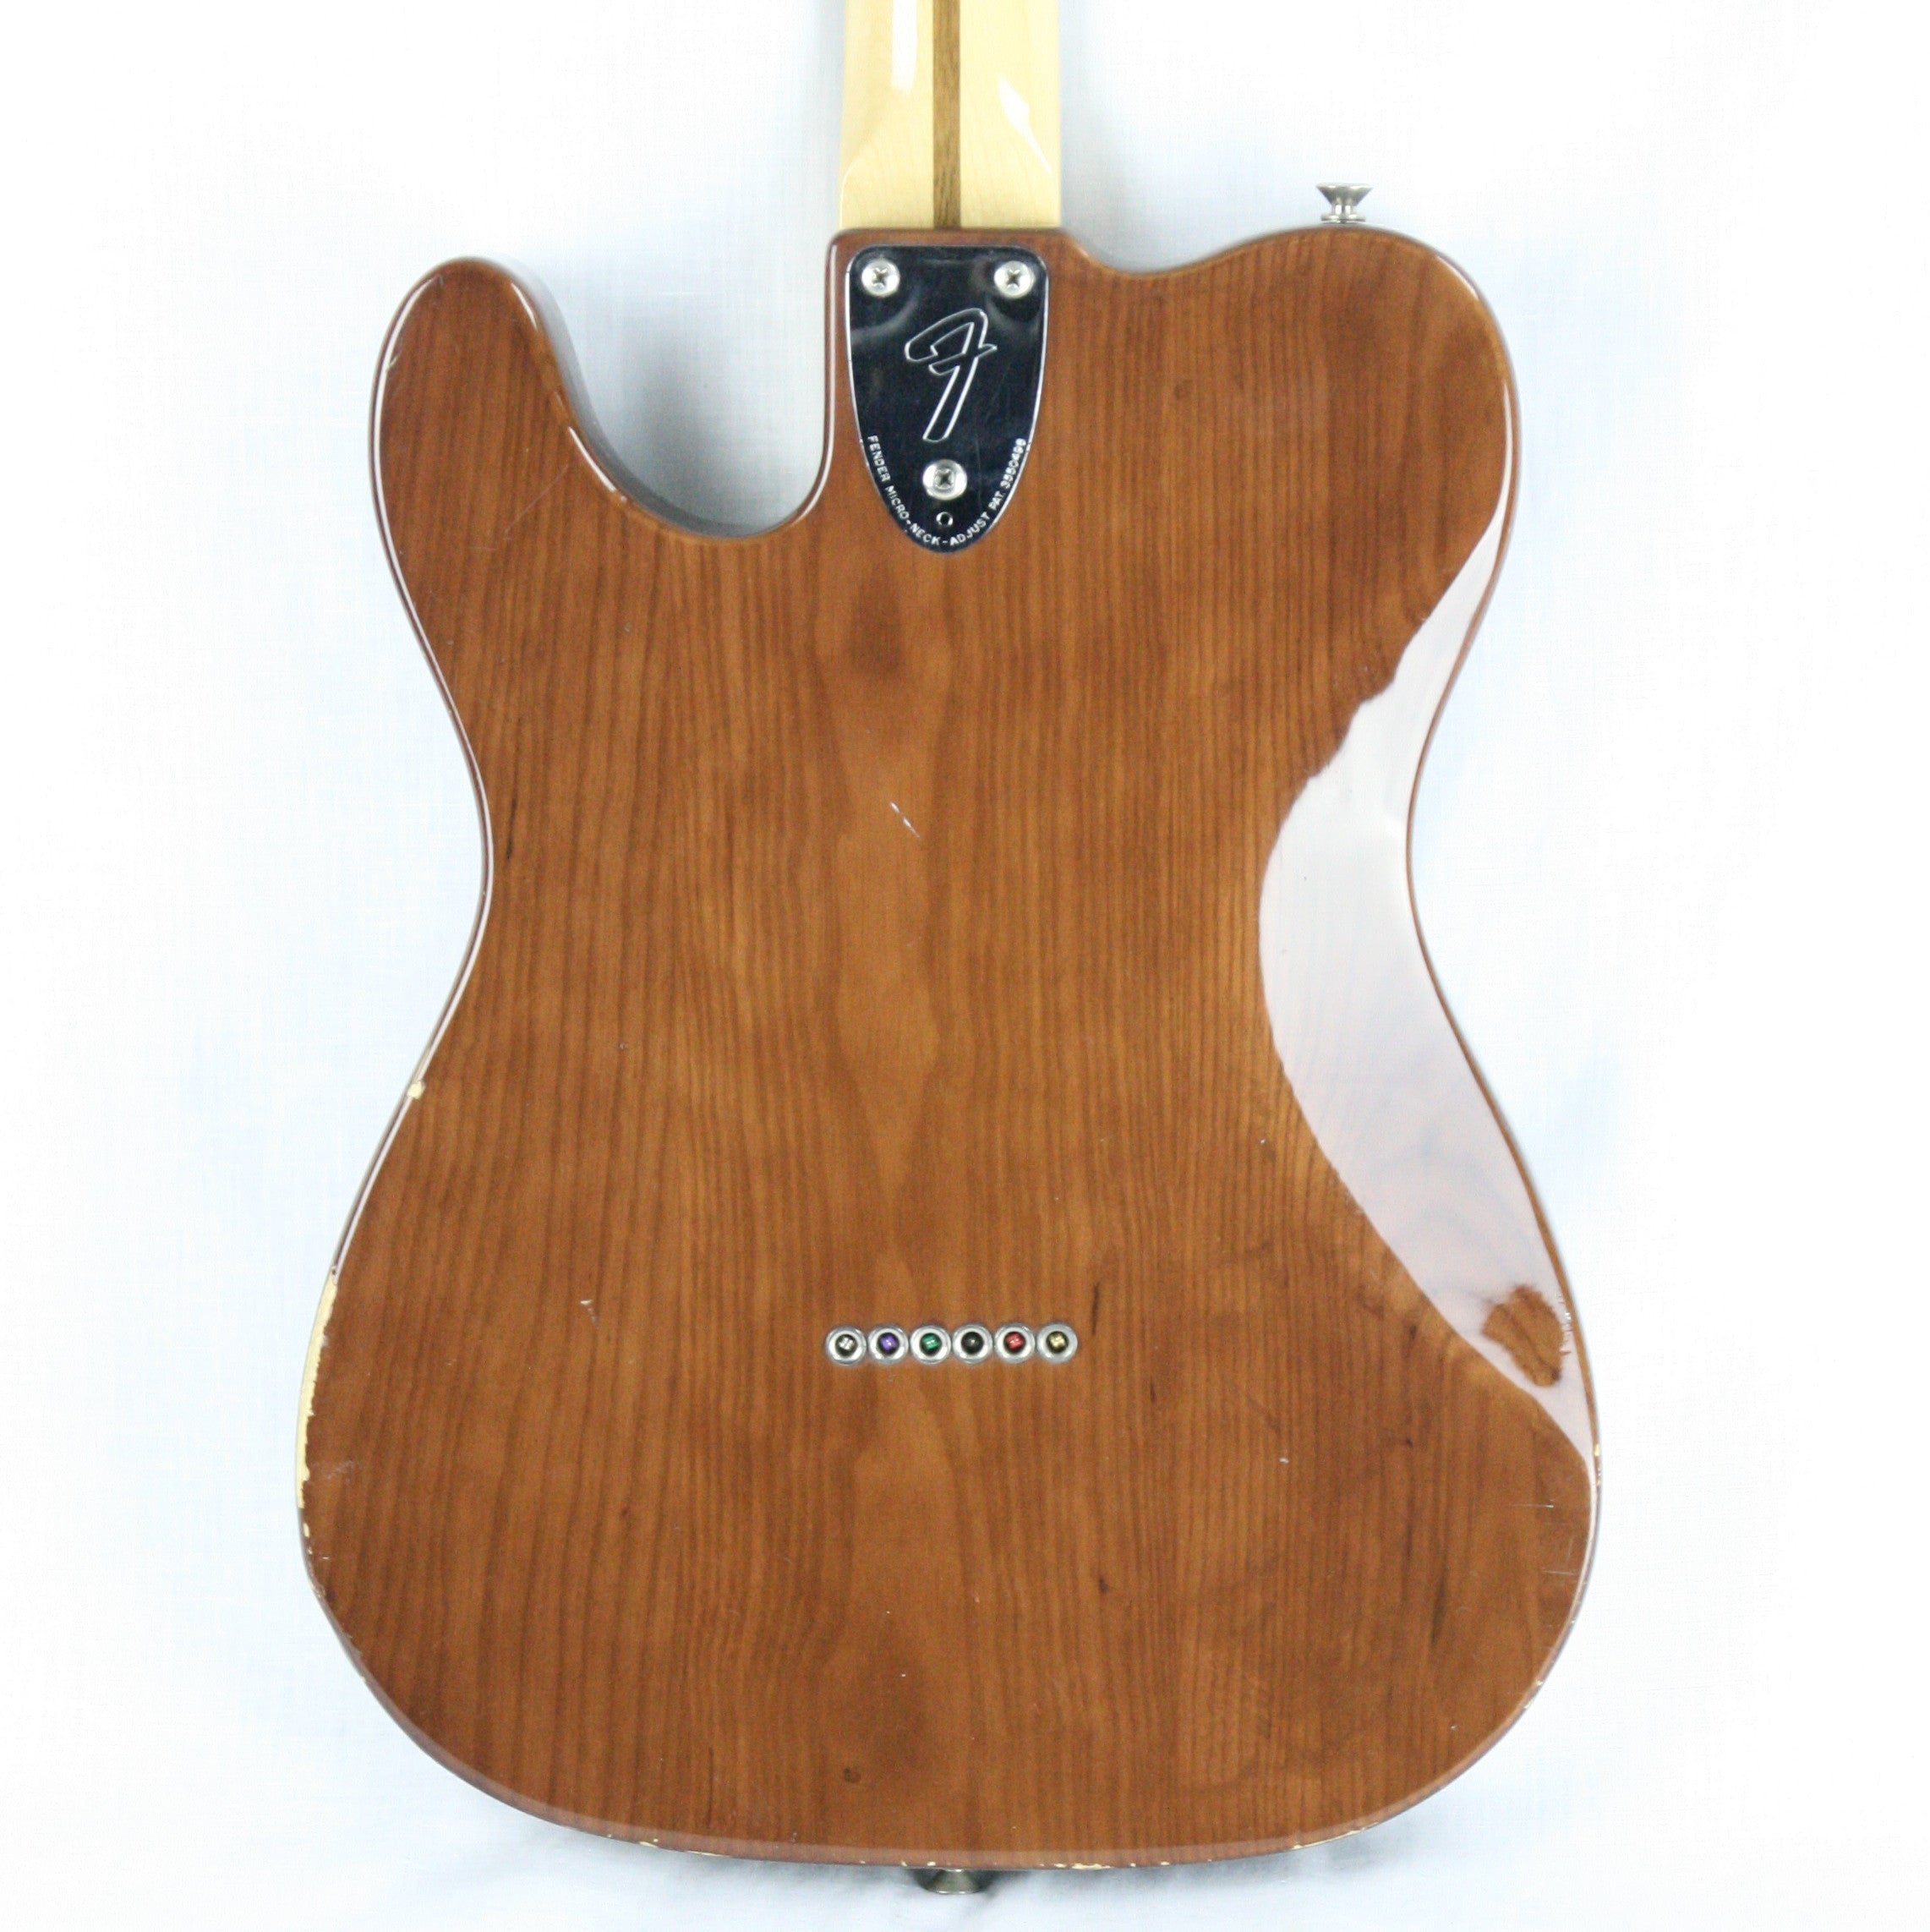 *SOLD*  1977 Fender Telecaster Deluxe Mocha Brown Wide-Range Humbuckers! 100% Original w/ Case